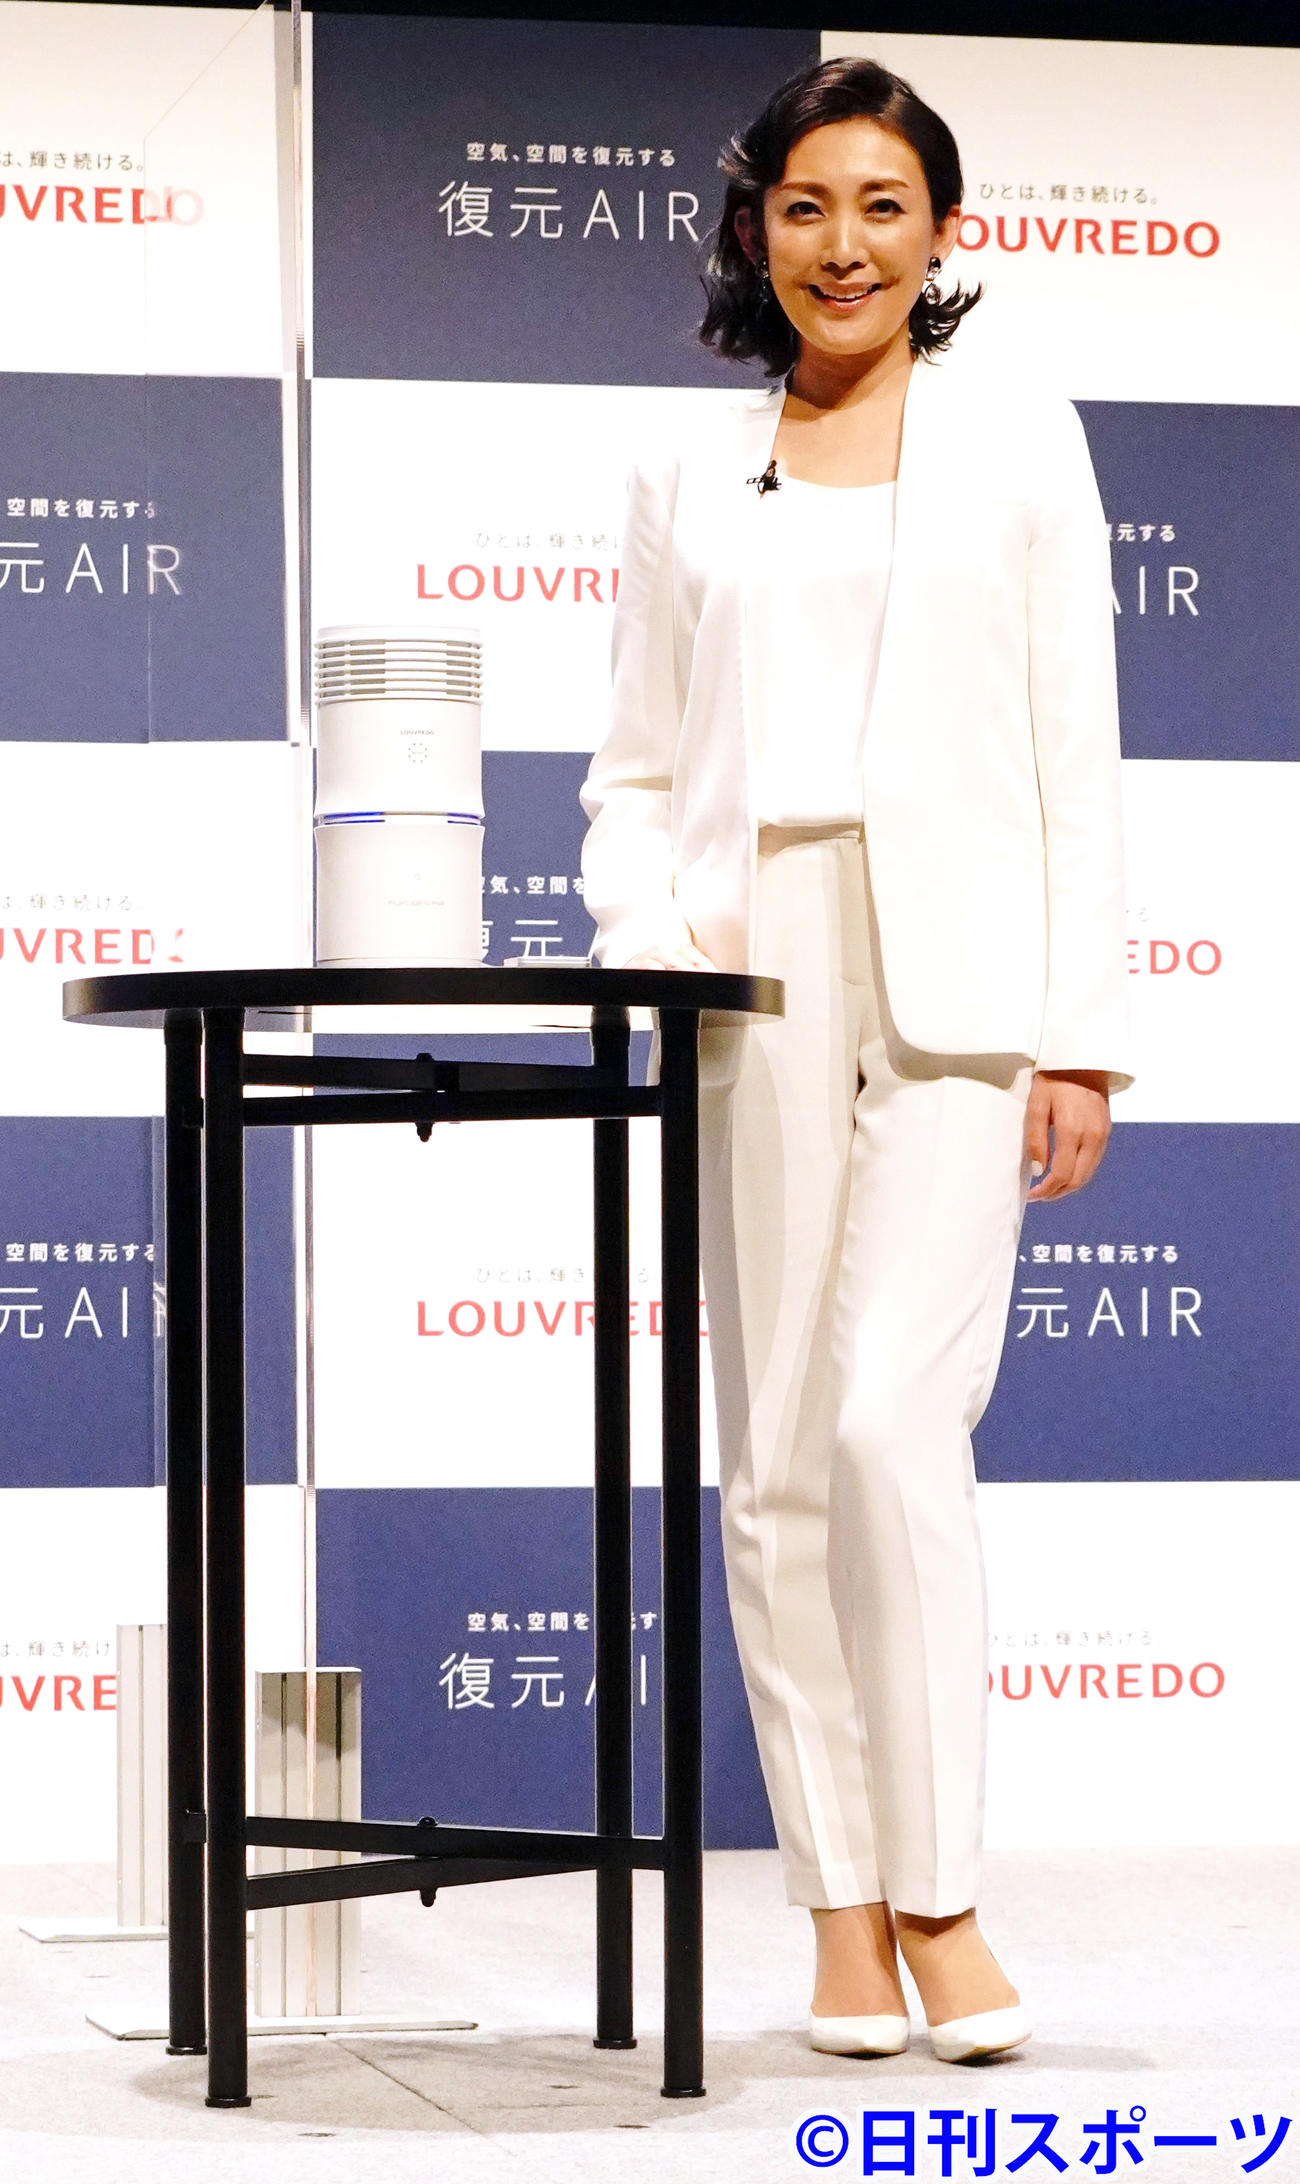 ルーブルドーの空気清浄器「復元AIR」の商品発表会に出席した田中美里（撮影・佐藤成）